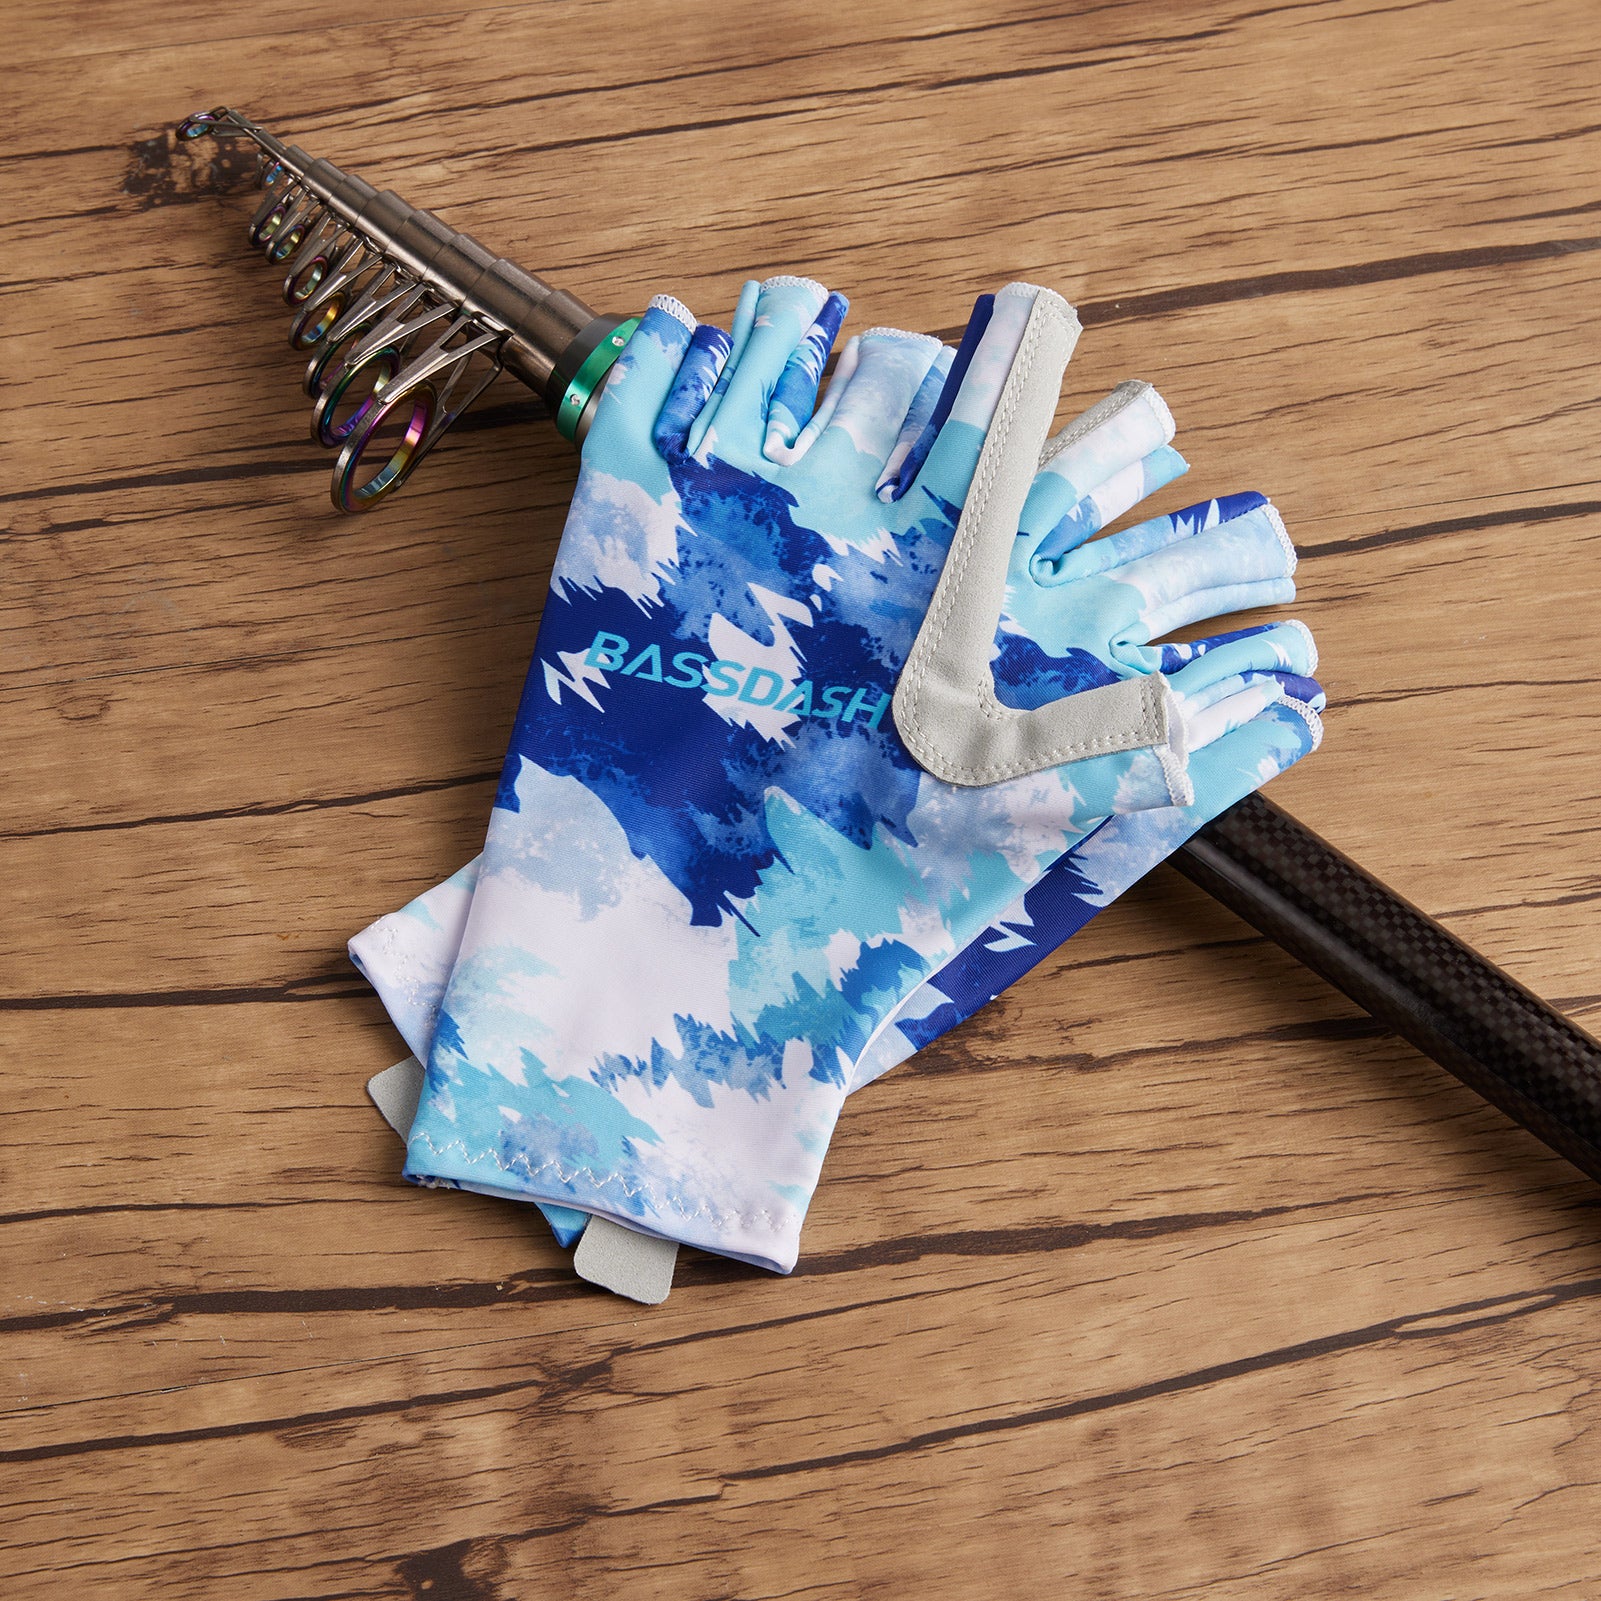 Maxdot UV Protection Driving Gloves Fingerless Gloves Non Slip Summer  Outdoor Gloves for Women and Girls